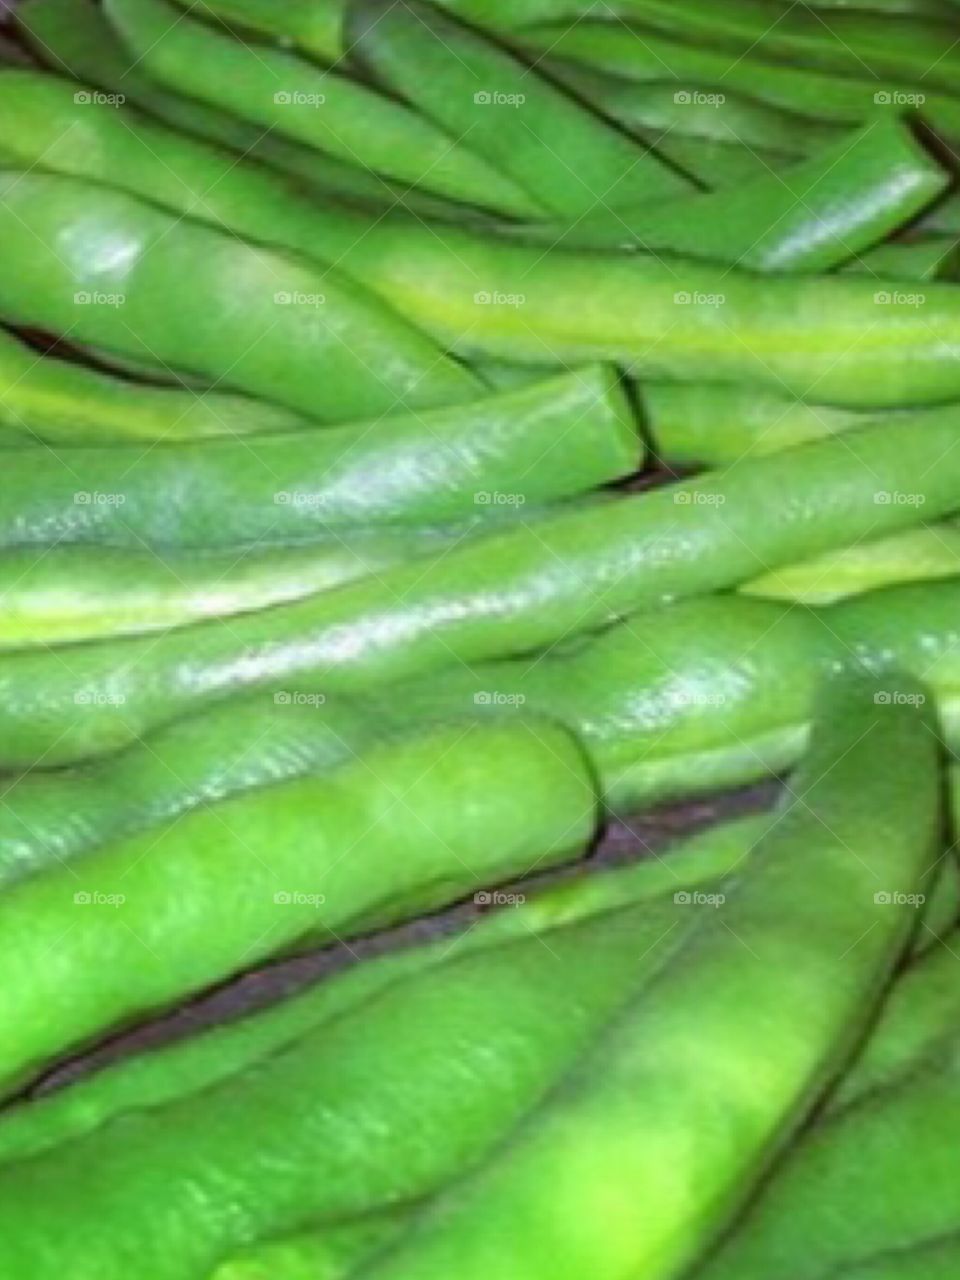 Green beans 